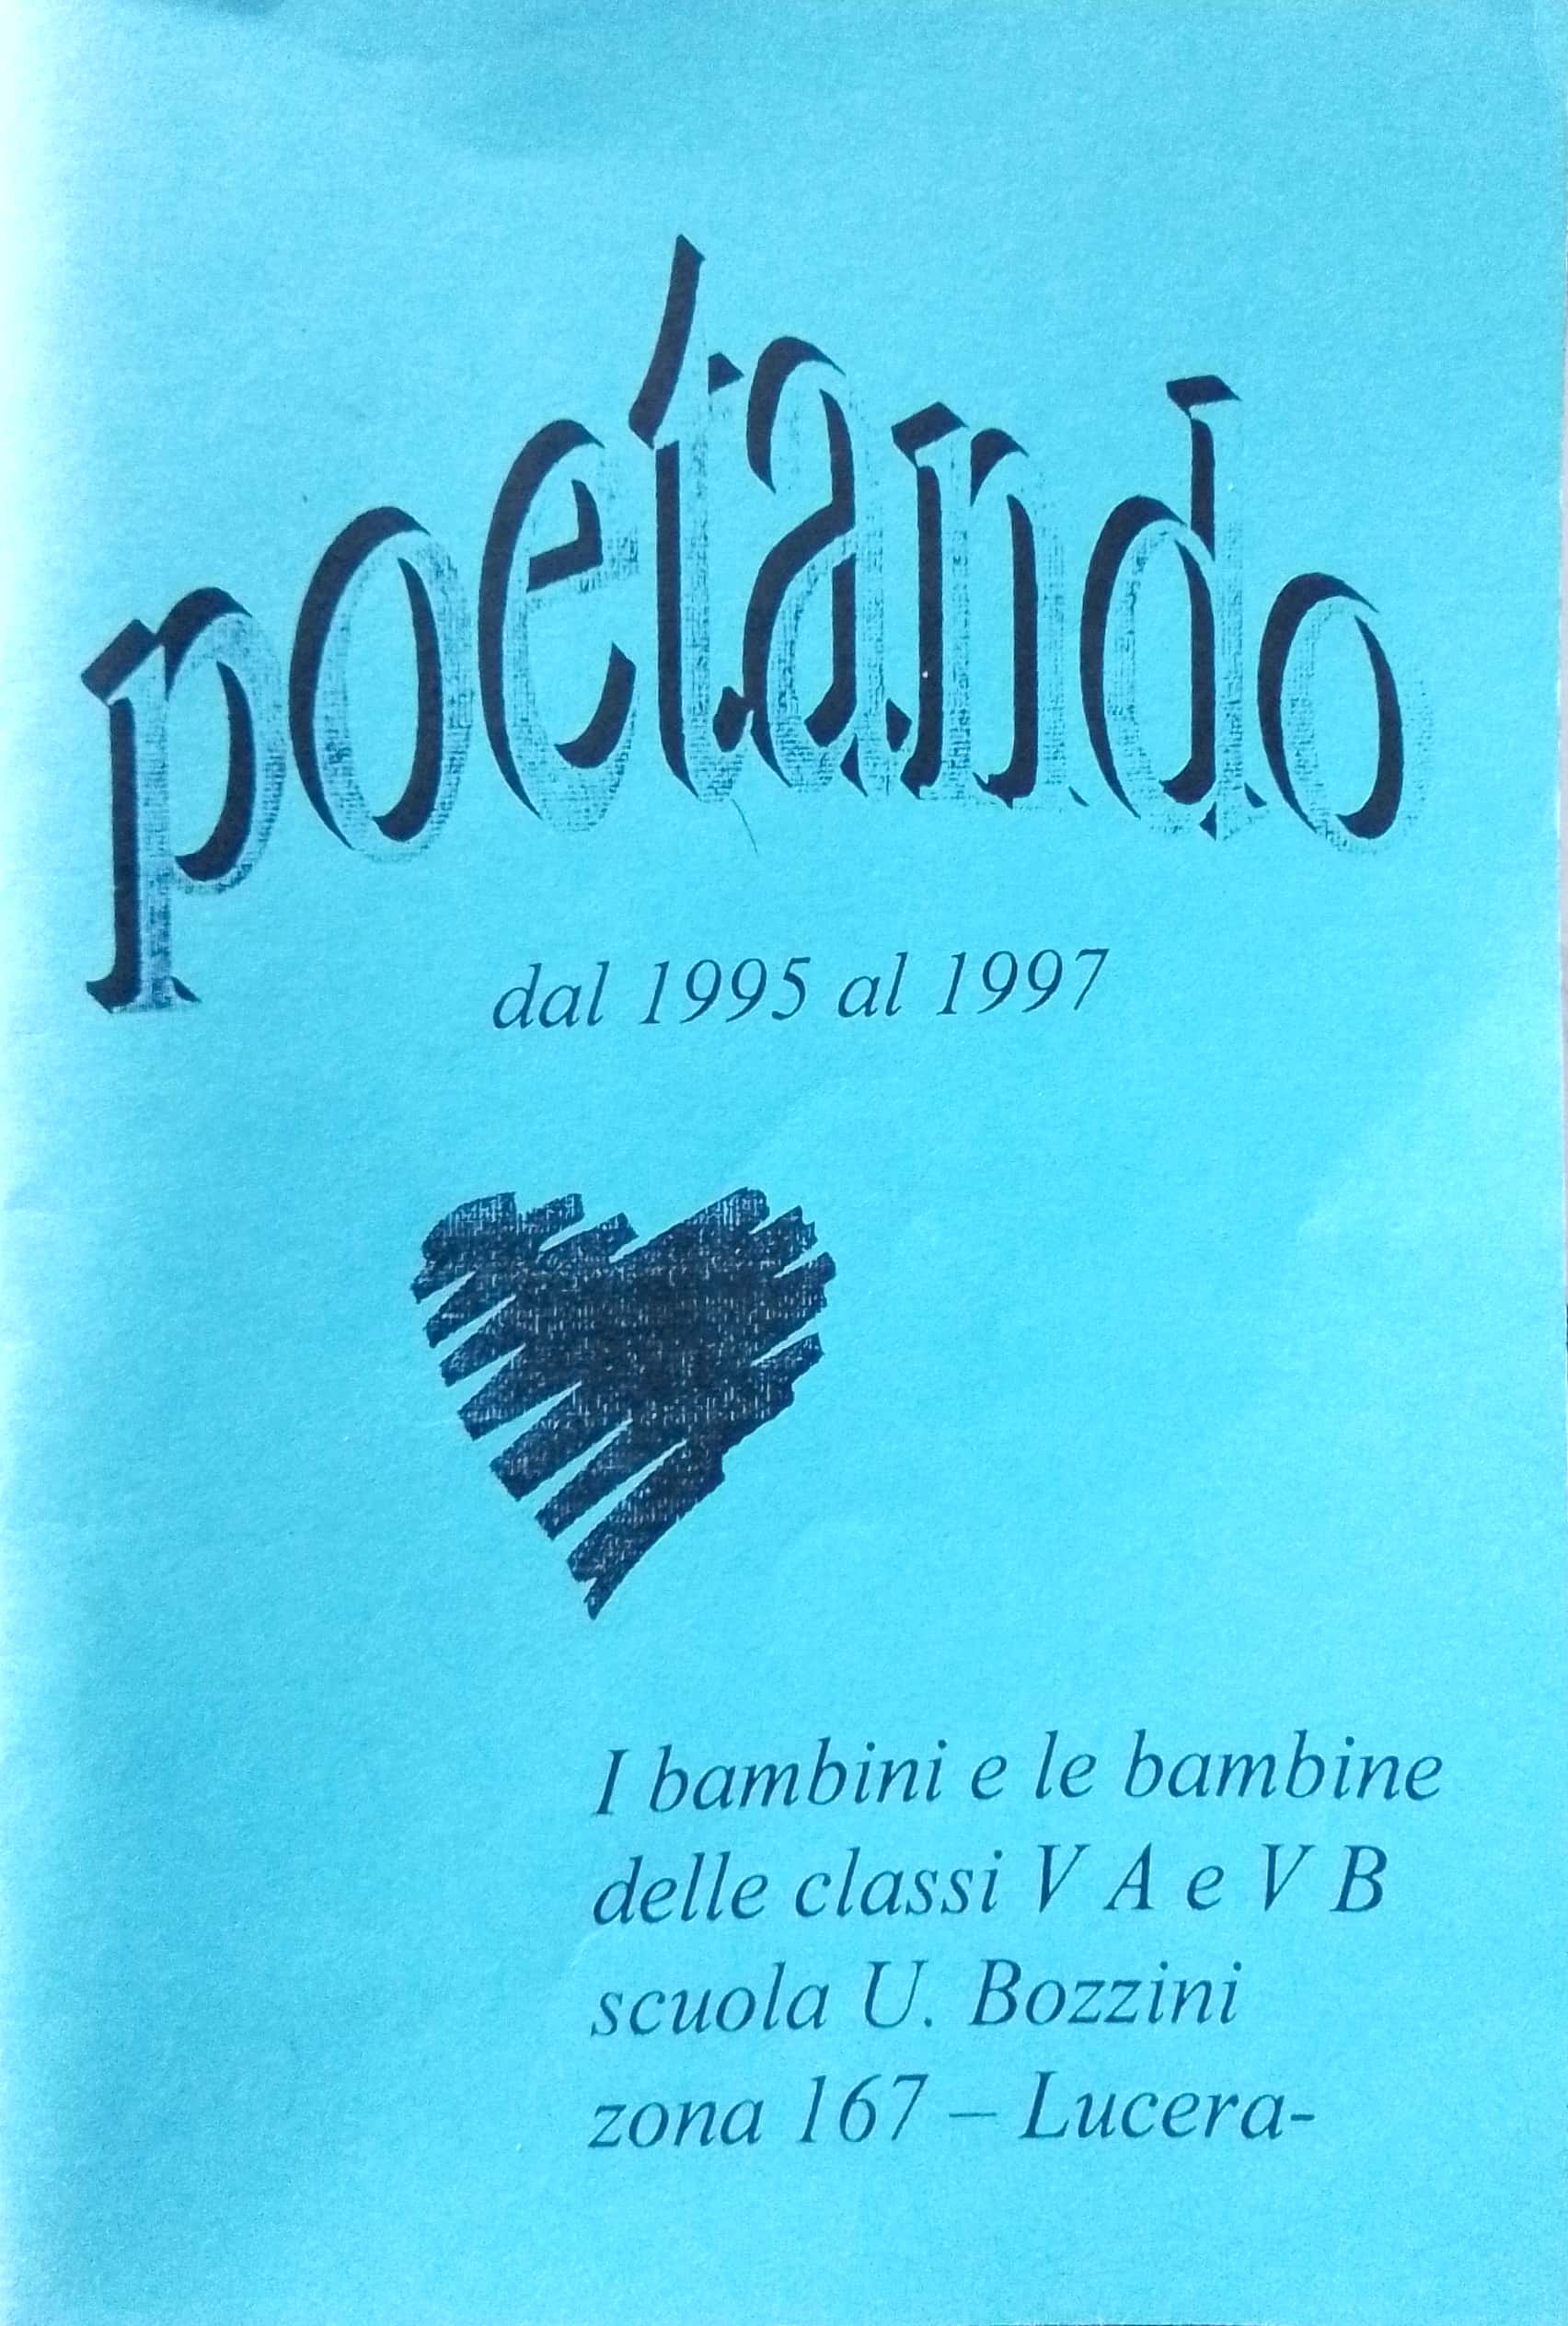 Copertina di Poetando